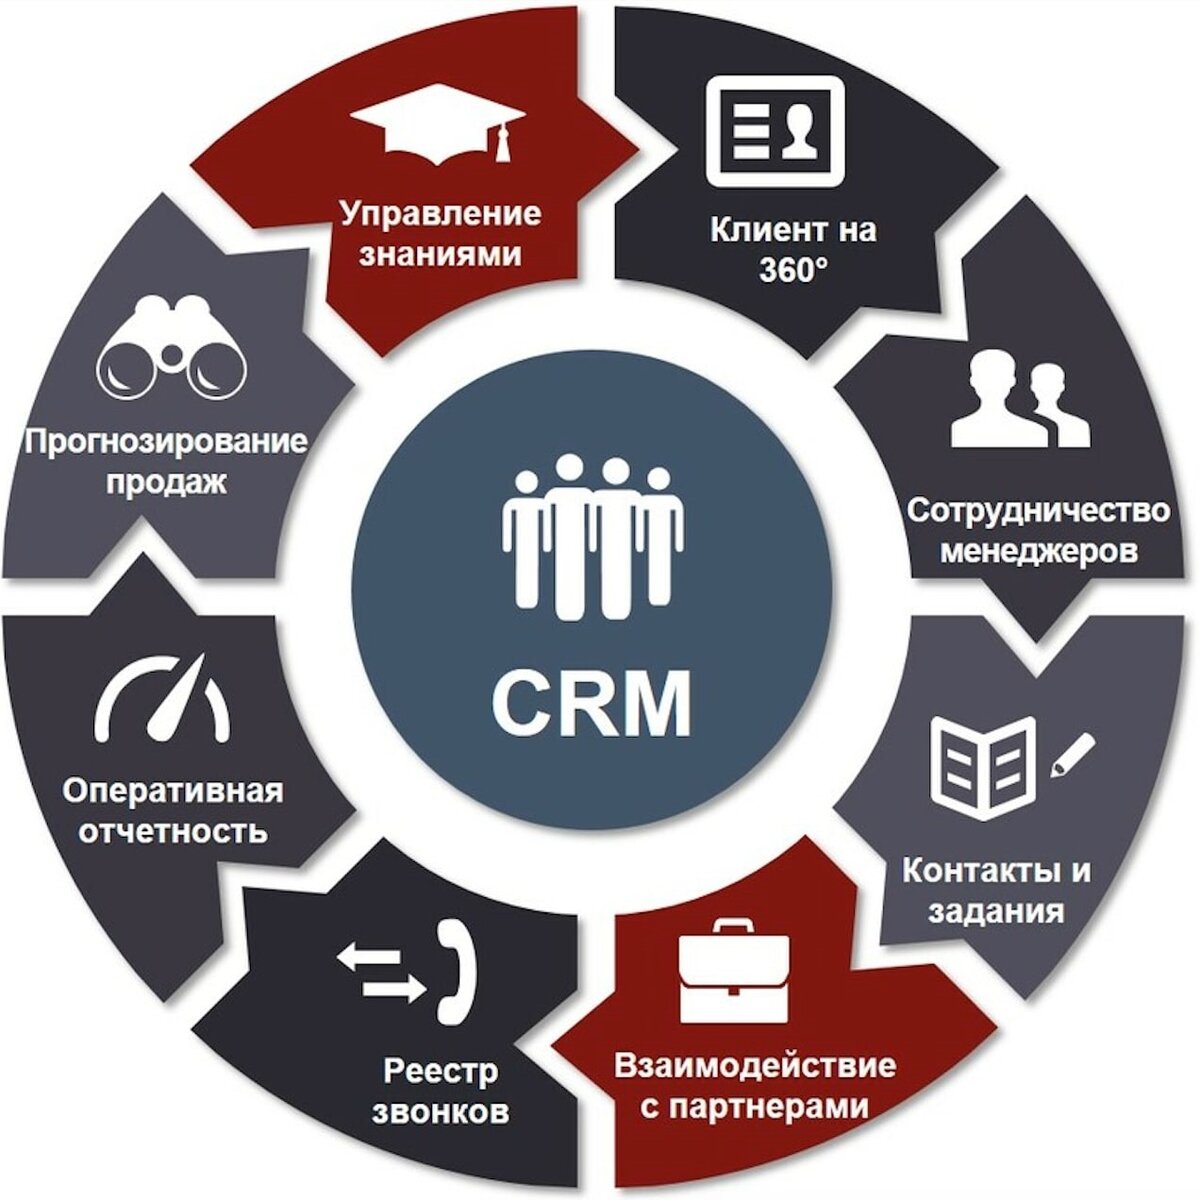 Продвинутое использование. CRM системы управления взаимоотношениями с клиентами. GRM - система управления ЗВАИМООТНОШЕНИЯ С клиентами. CRM (customer relationship Management) системы. CRM системы что это.